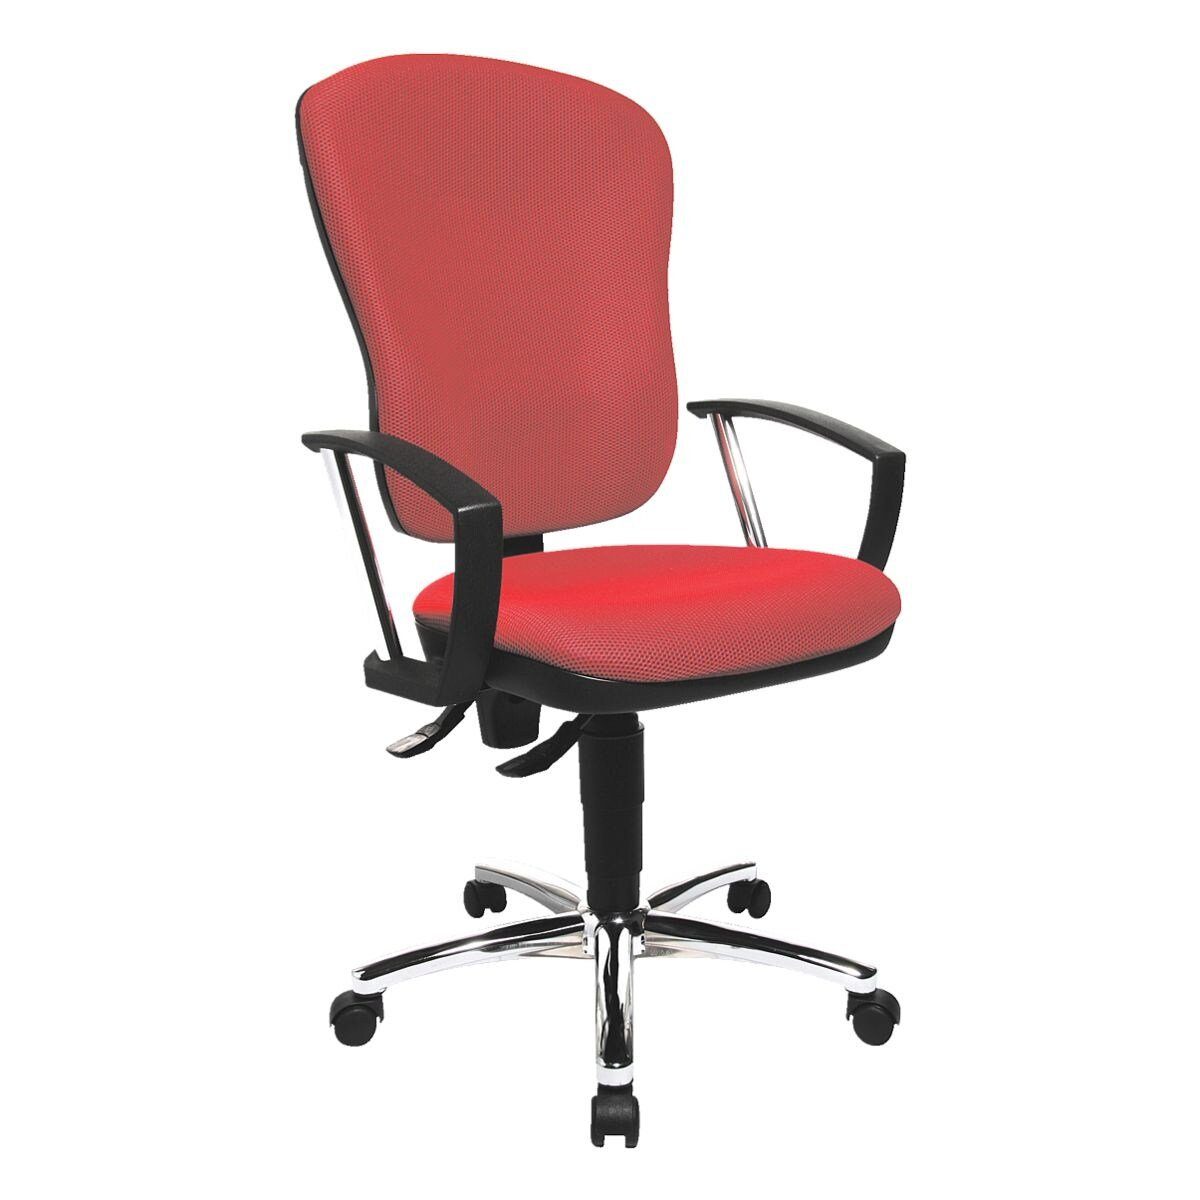 TOPSTAR Armlehnen) / Point konturgeformter Beckenstütze Muldensitz Steel 80, rot Schreibtischstuhl (ohne mit Lehne,